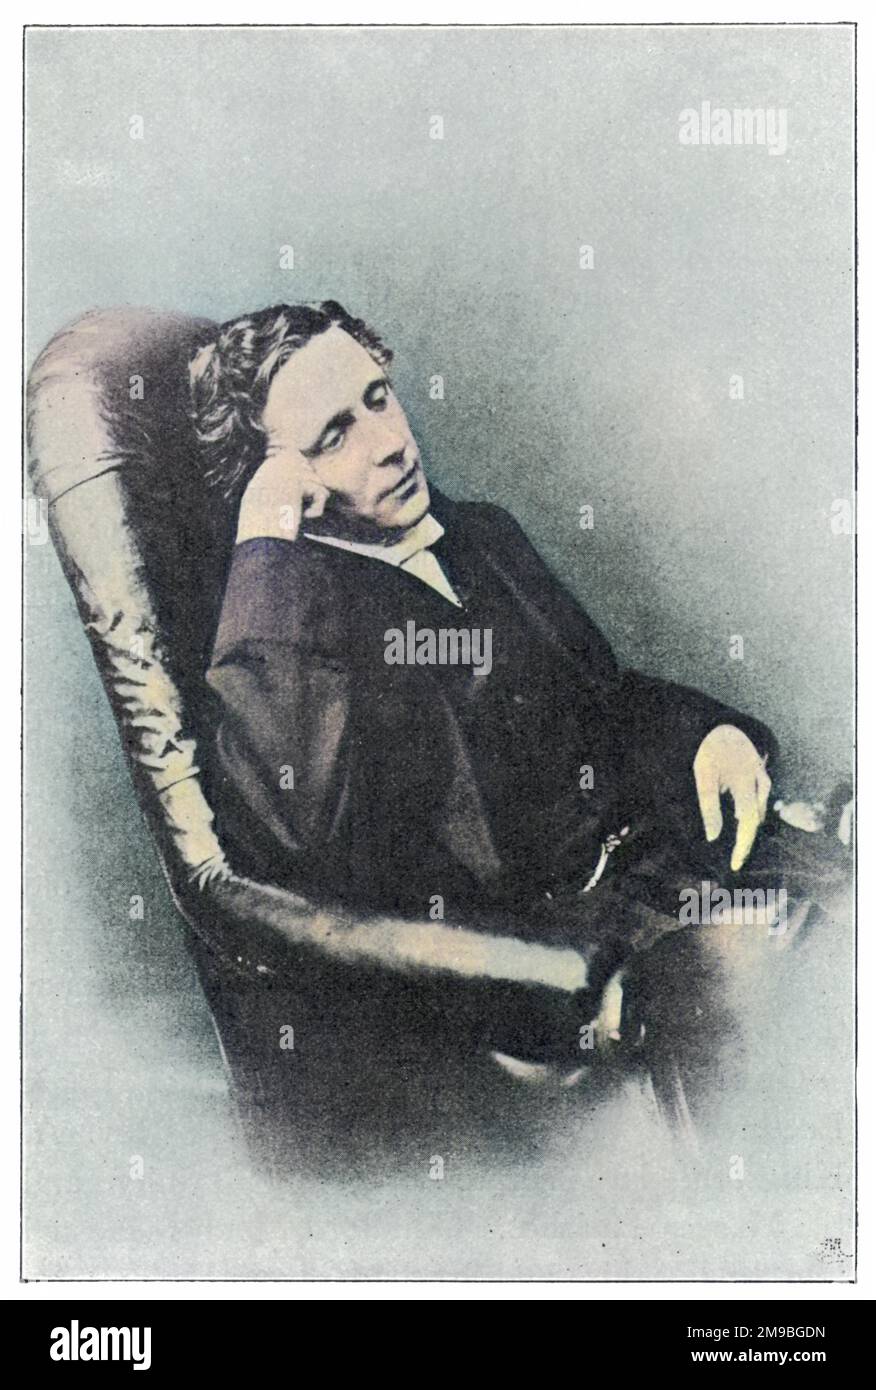 LEWIS CARROLL alias CHARLES LUTWIDGE DODGSON (1832 - 1898), englischer Mathematiker, Geistlicher und Schriftsteller - Schöpfer von "Alice". Stockfoto